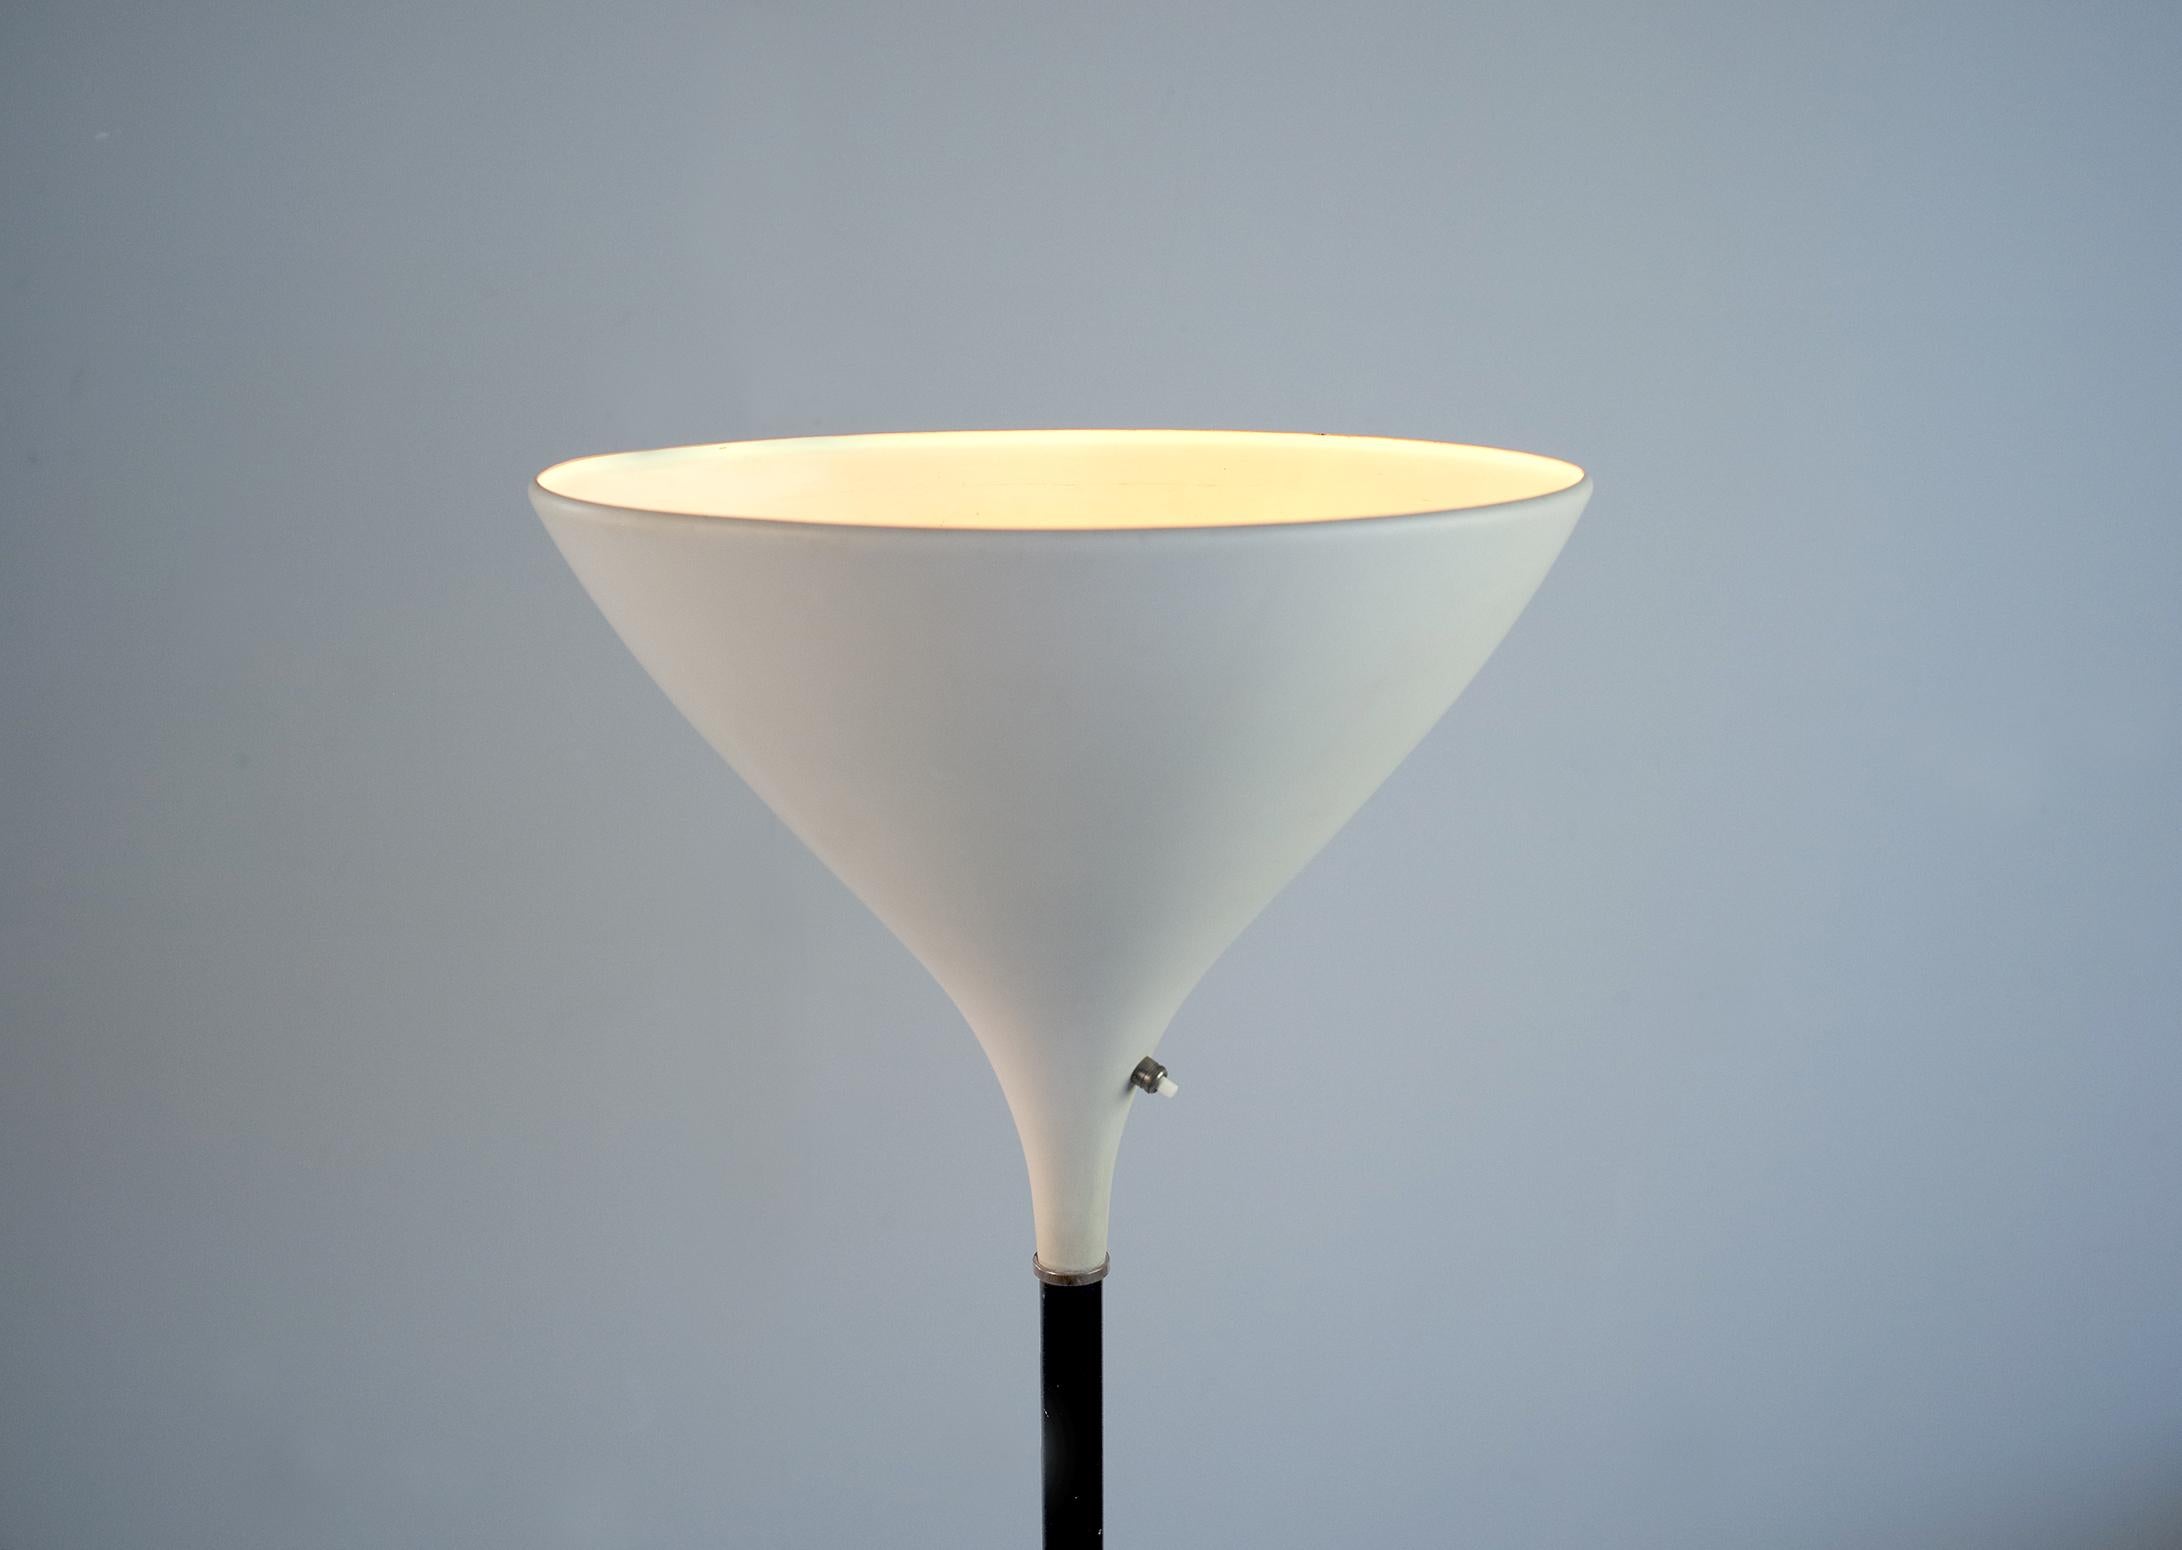 Très rare lampe d'éclairage indirect publiée par la maison Stilnovo, Italie 1950. Bruno Gatta est le fondateur de Stilnovo en 1946.
Base en marbre blanc, barillet en métal laqué noir mat rehaussé d'anneaux en laiton, réflecteur en métal laqué blanc